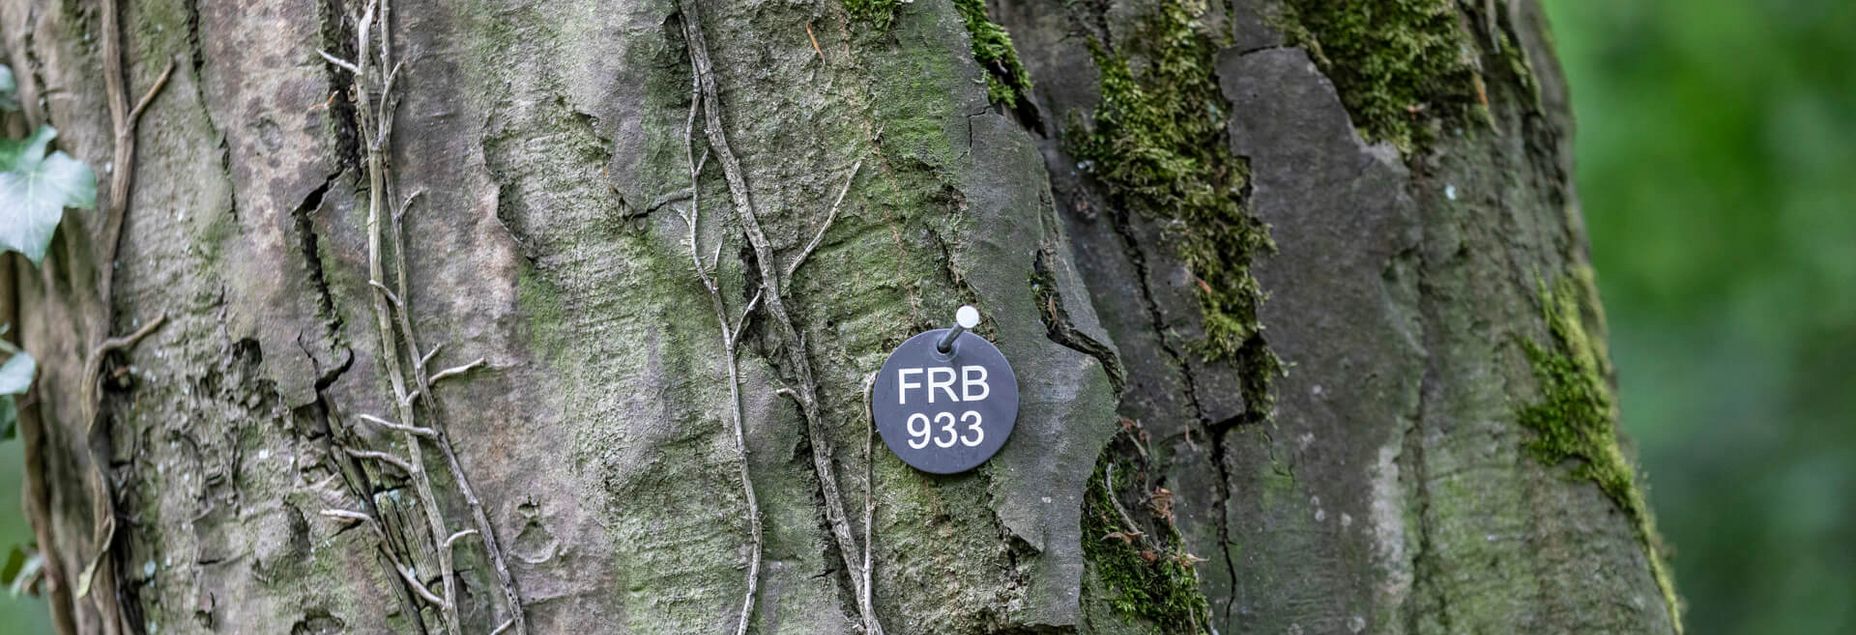 FRB 933 - Plakette